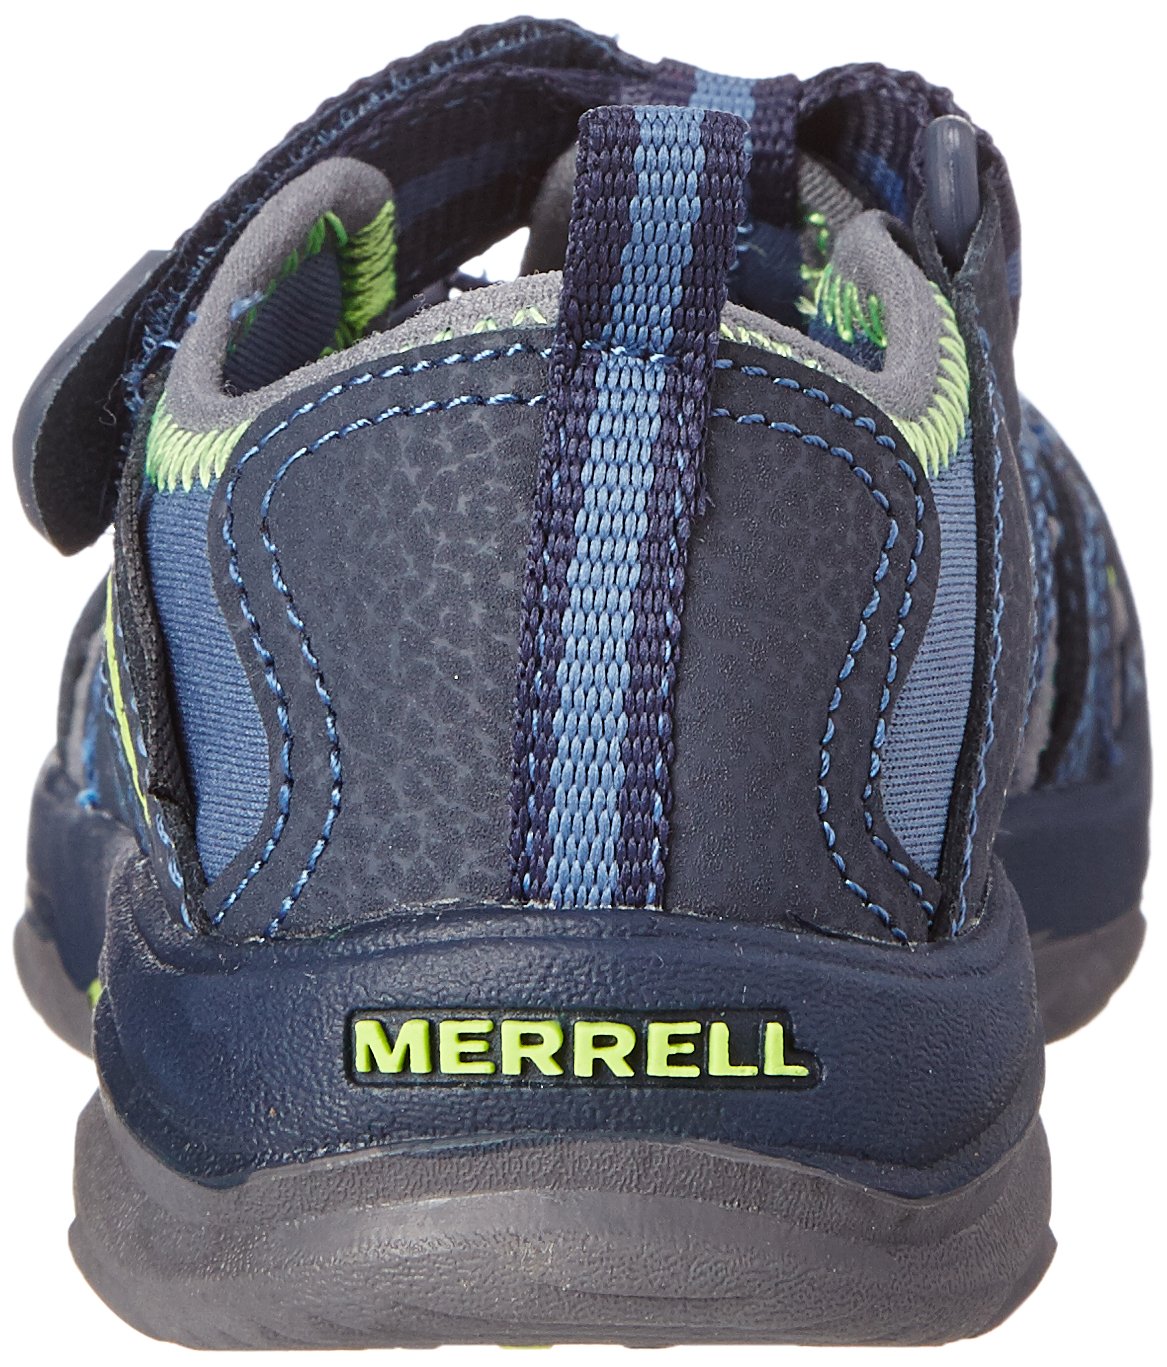 Merrell Kid's Hydro Junior Sport Sandal